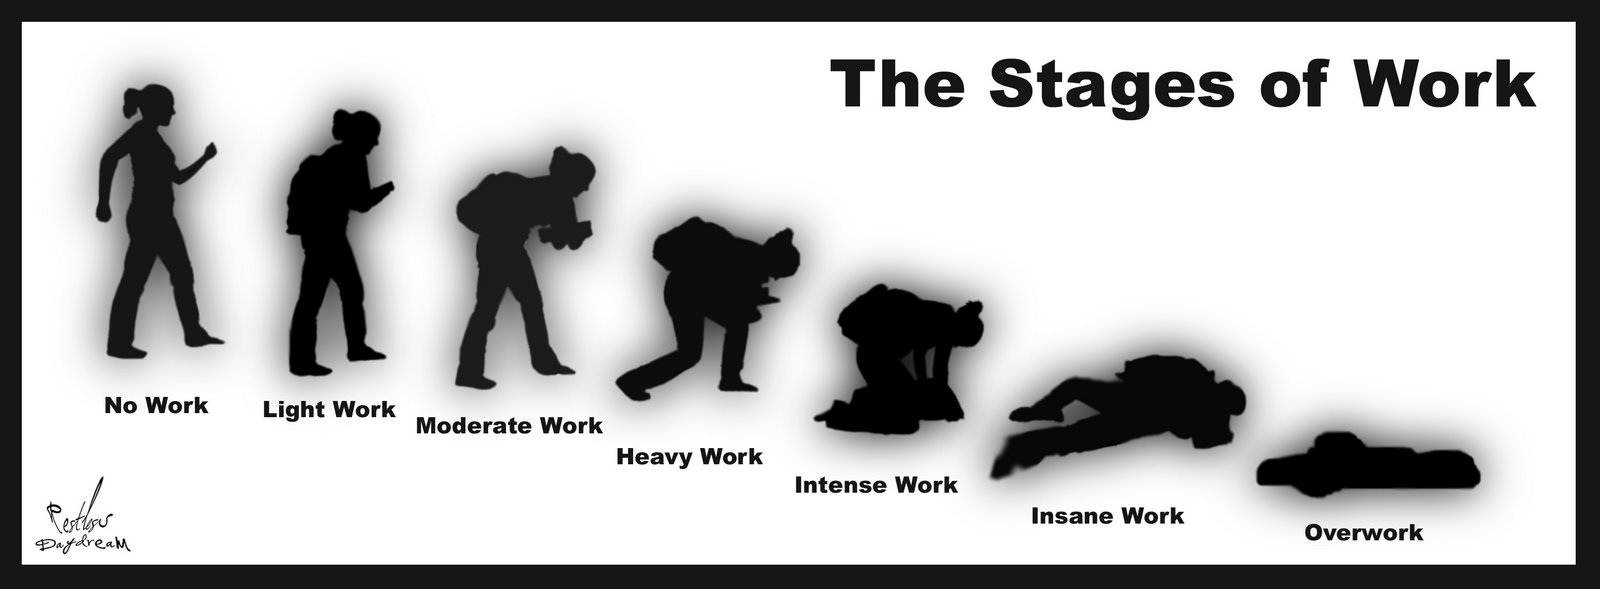 [Stages_of_Work_by_RestlessDaydream.jpg]